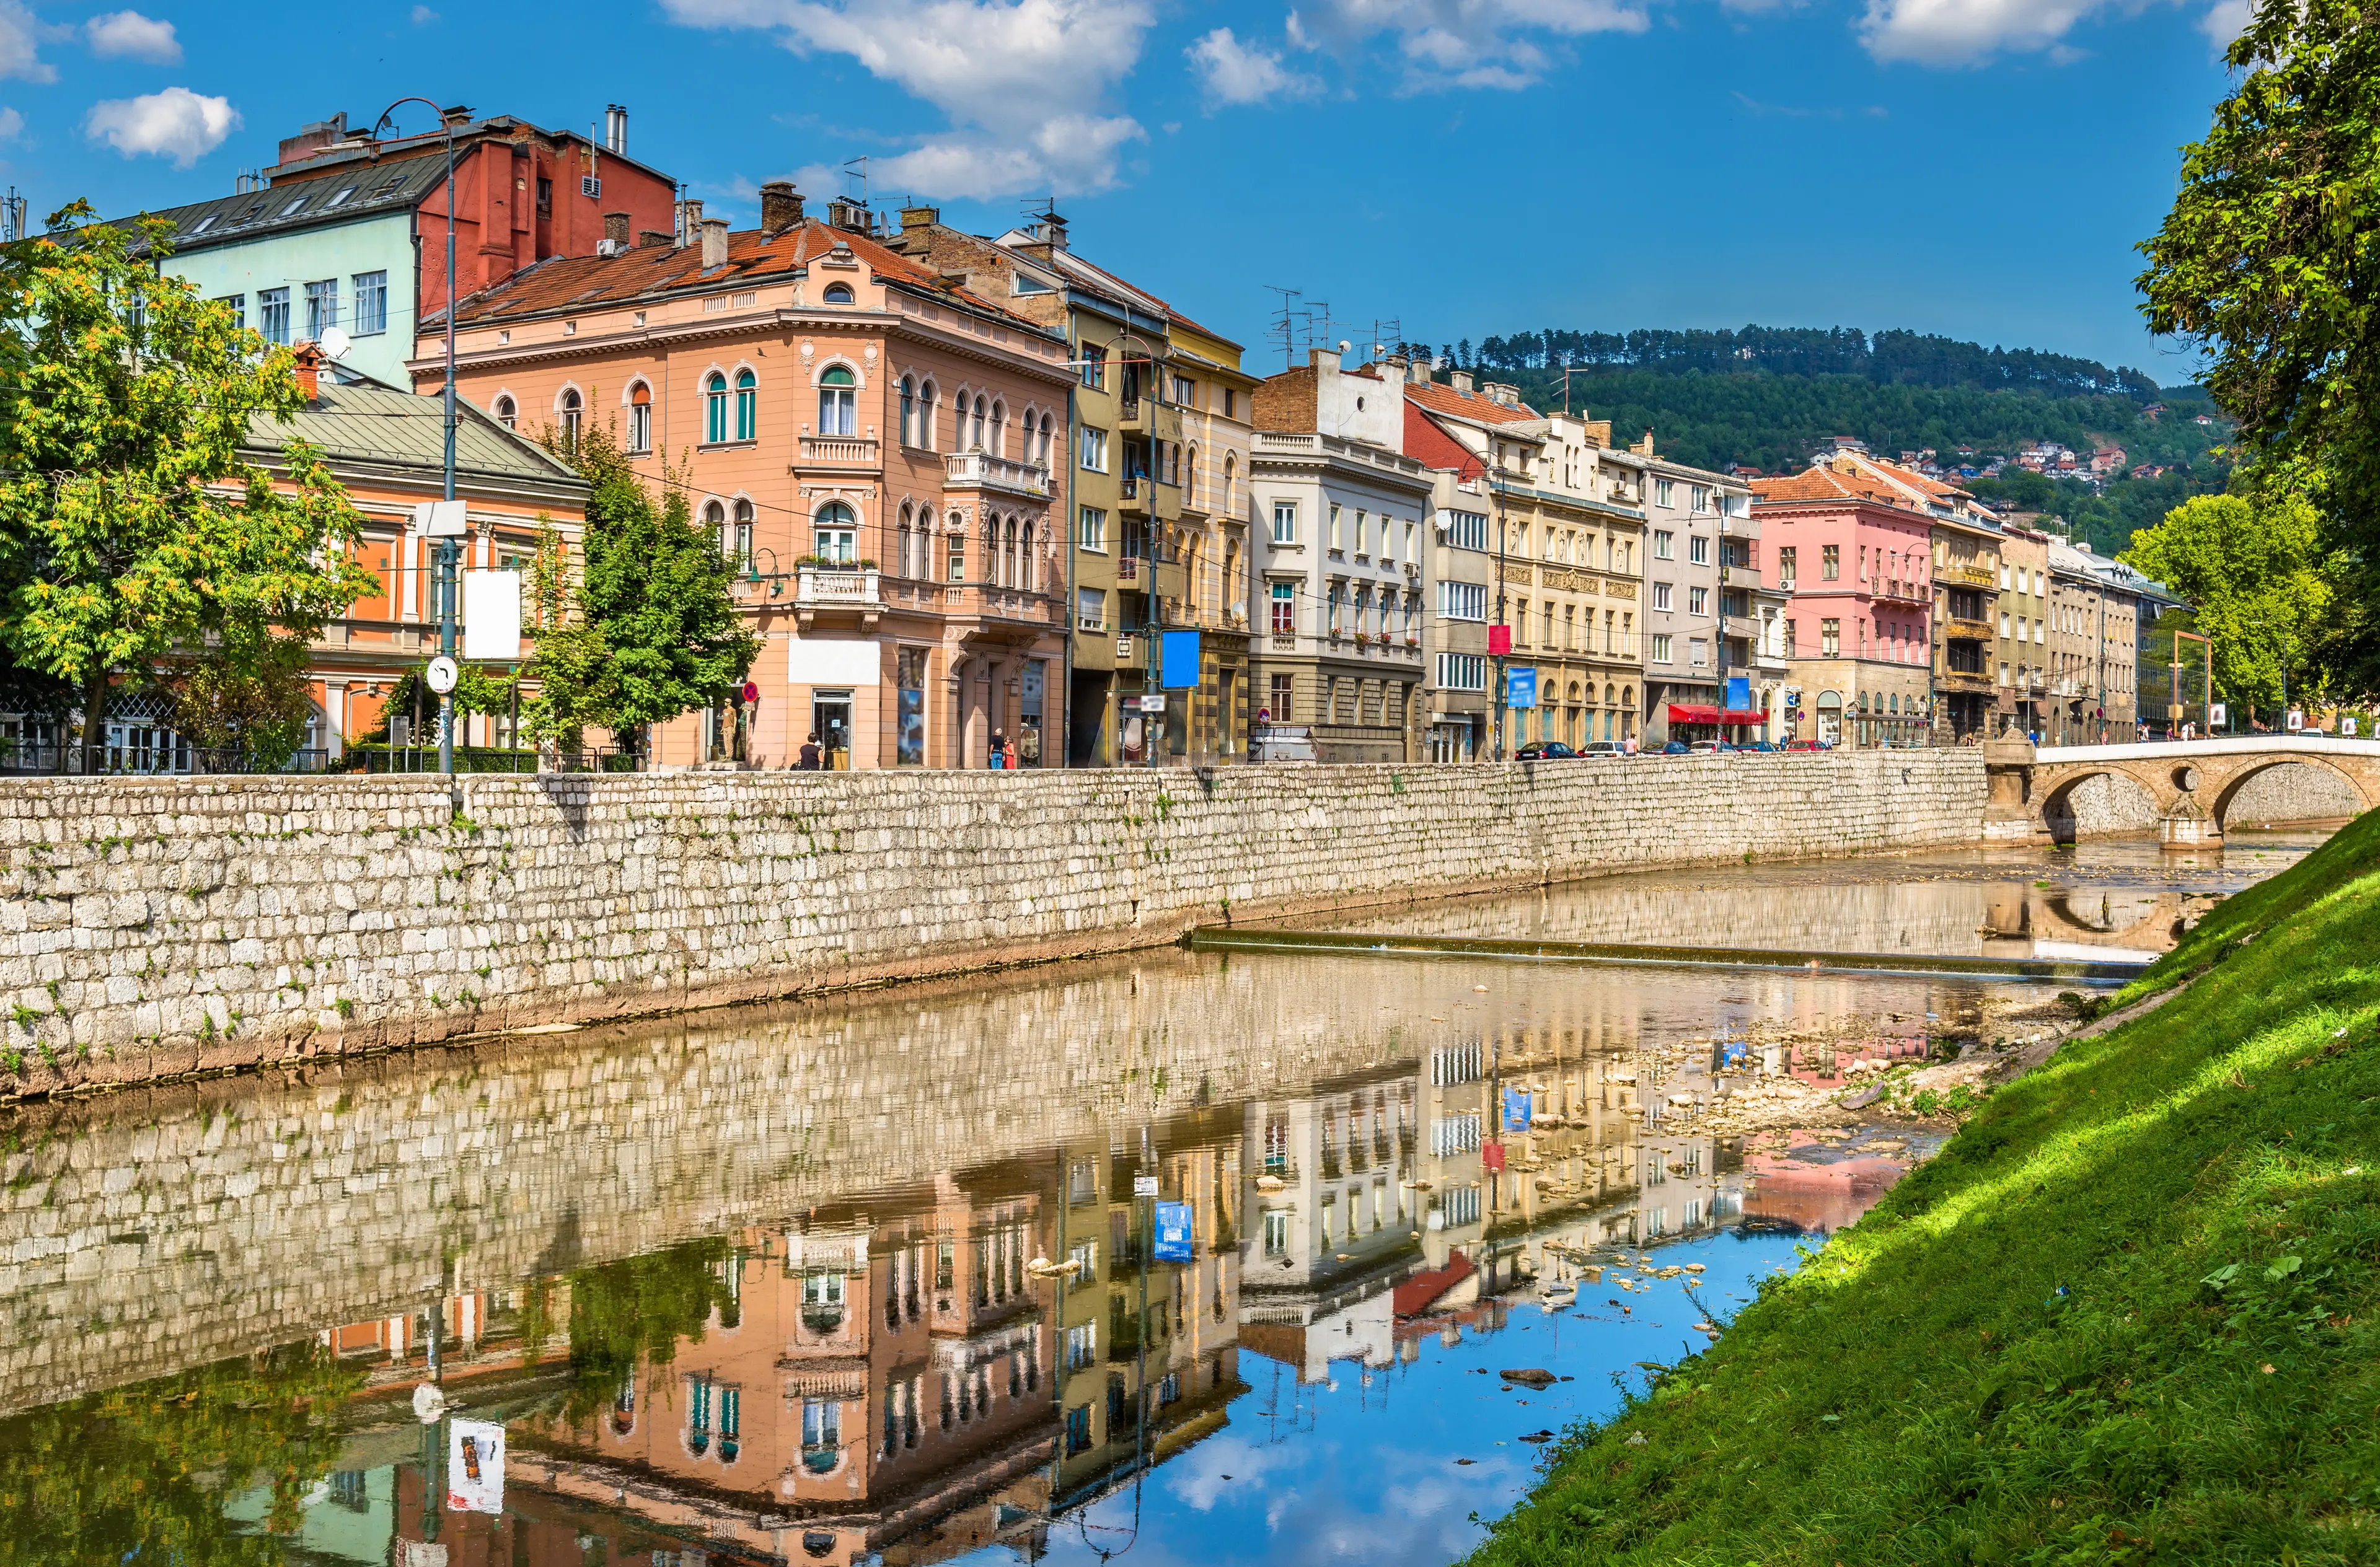 Buildings in Sarajevo over the river Miljacka